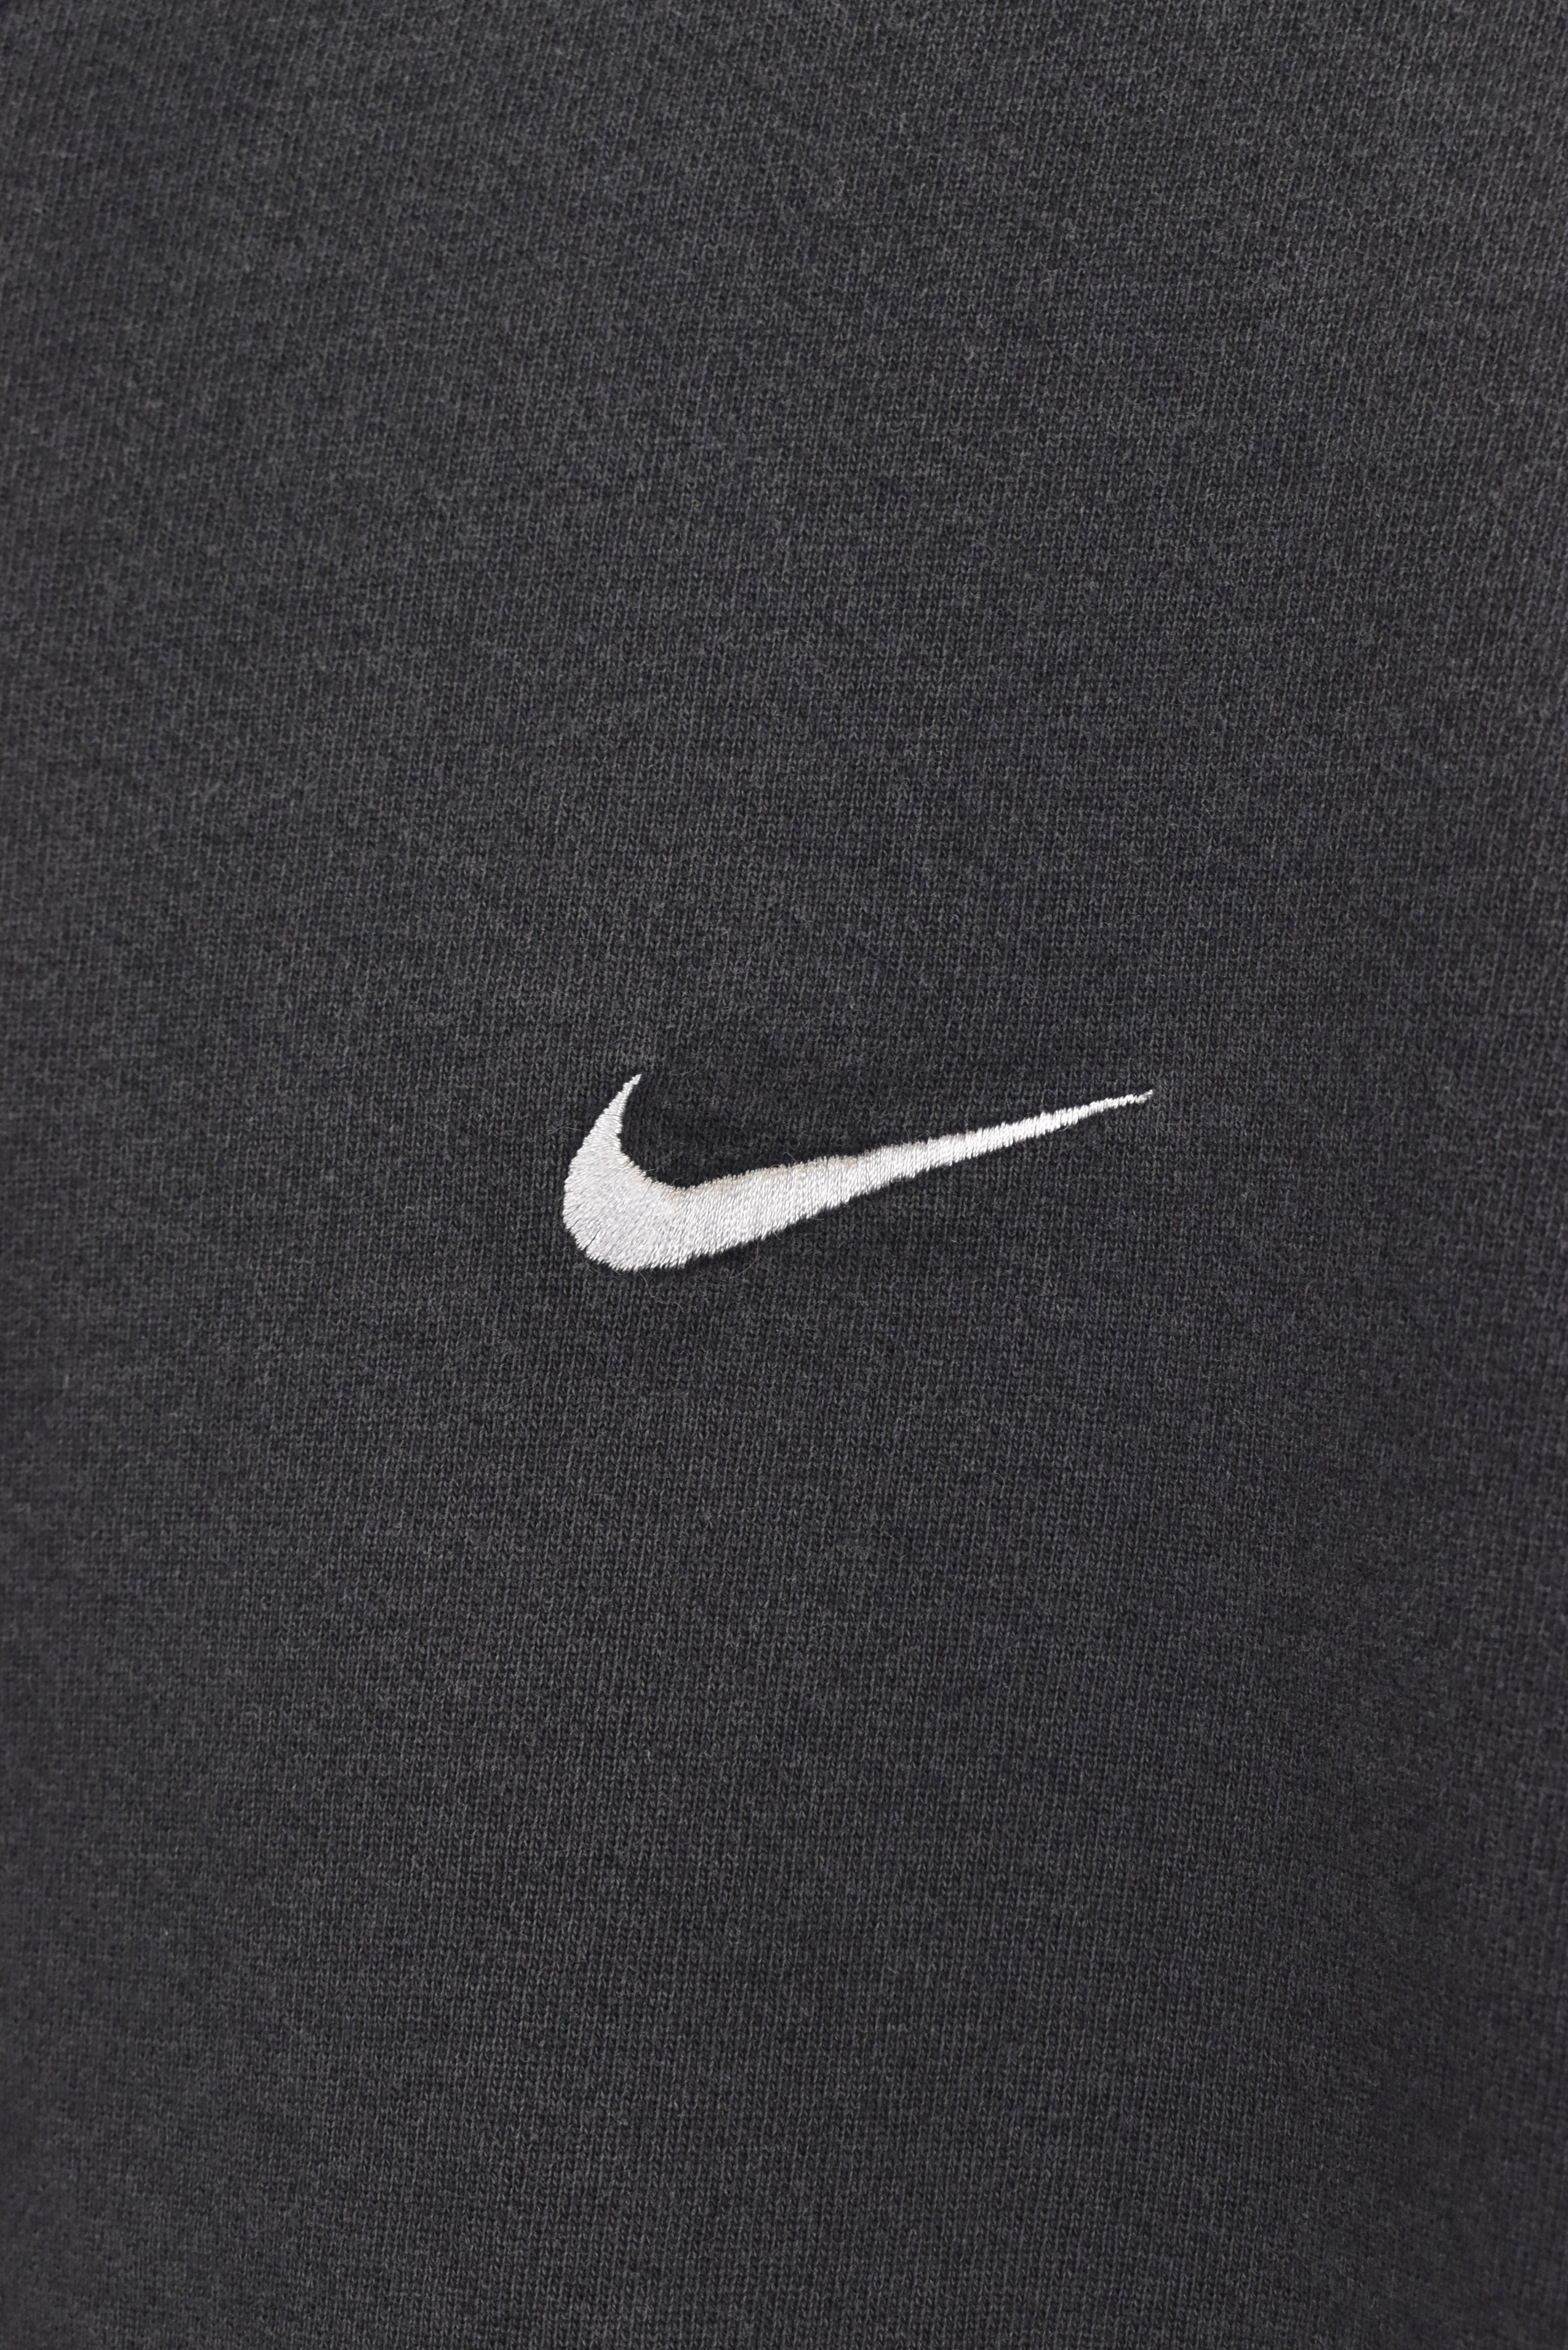 Vintage Nike sweatshirt, black embroidered crewneck - AU XL NIKE